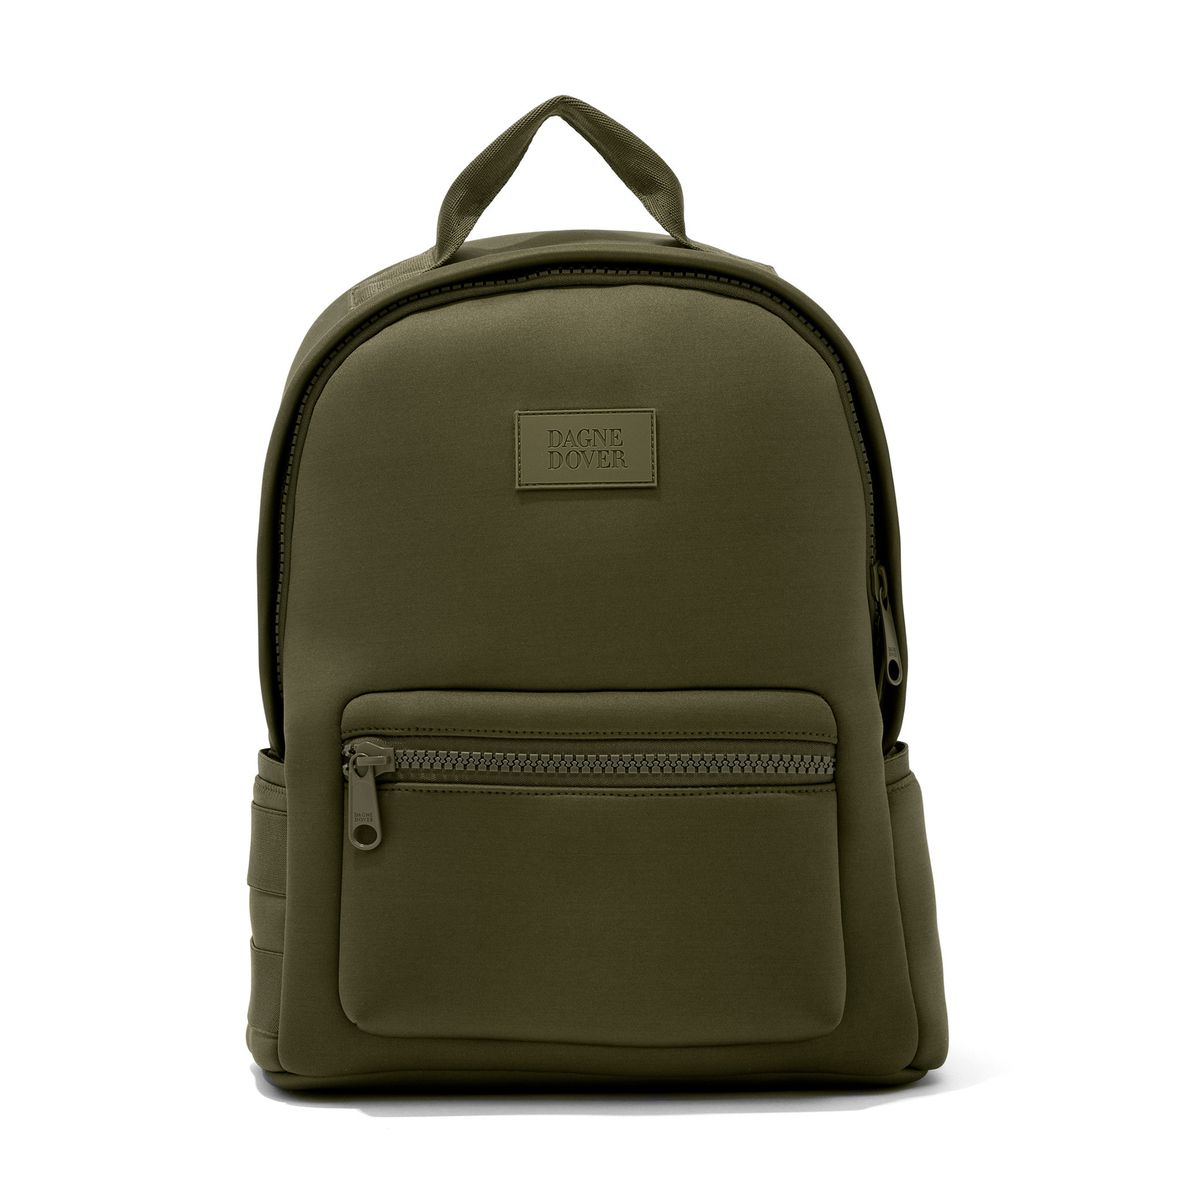 Army green neoprene backpack.